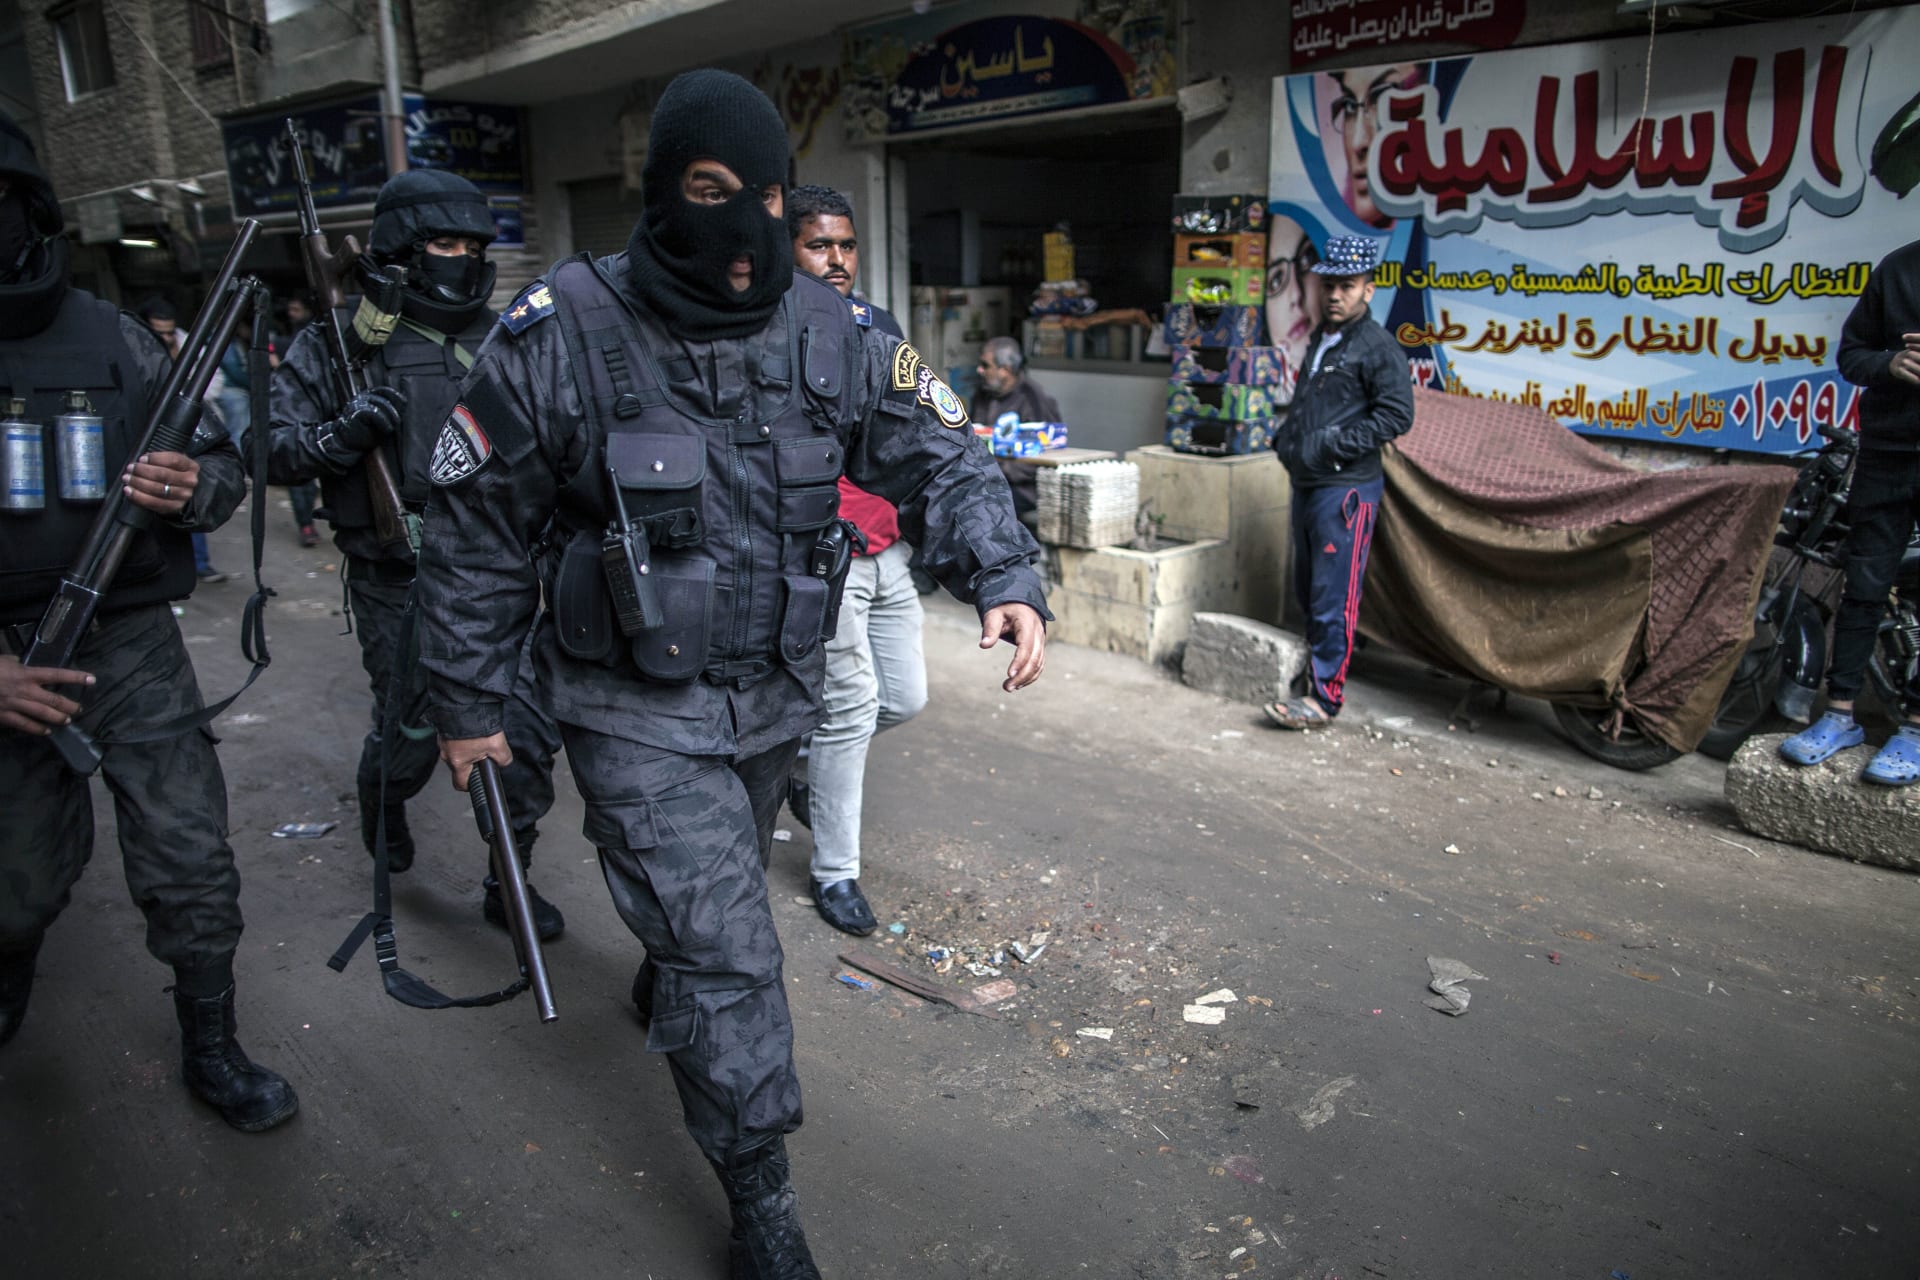 الداخلية المصرية تعلن إحباط "مخطط لإسقاط الدولة" بالتزامن مع "30 يونيو"